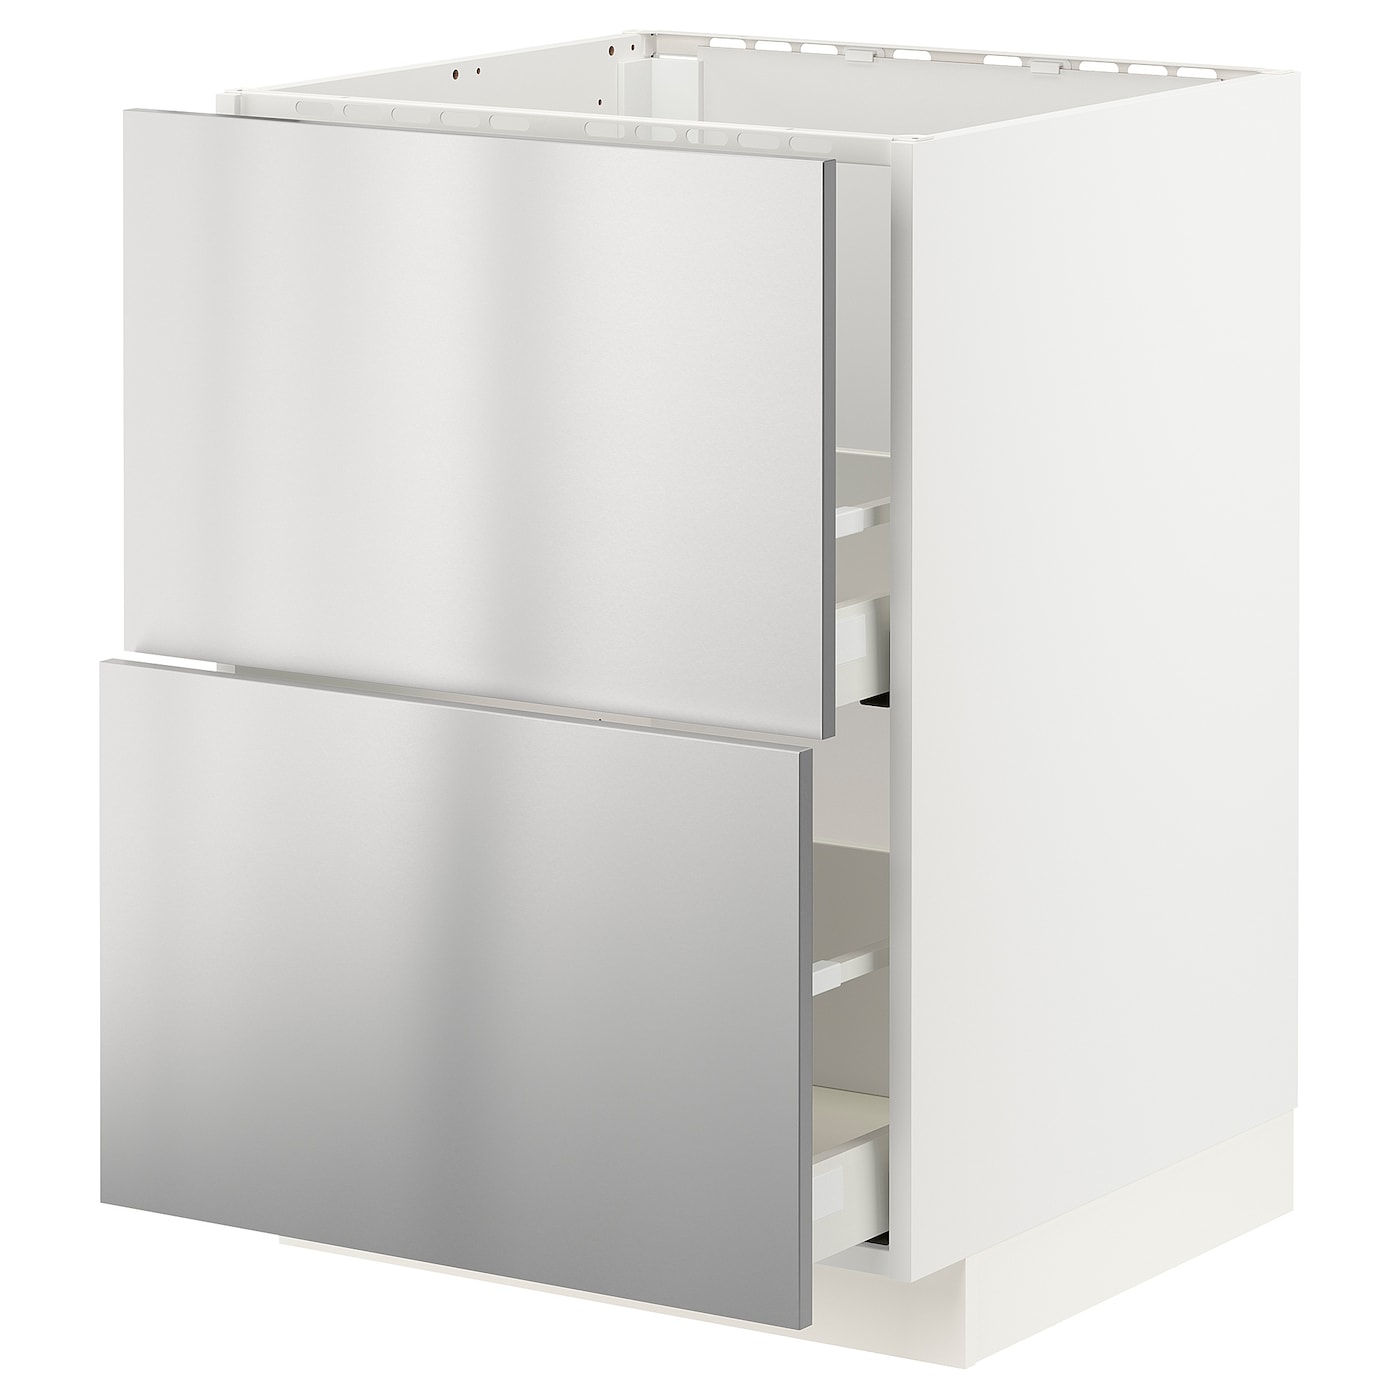 Напольный кухонный шкаф  - IKEA METOD MAXIMERA, 88x61,6x60см, белый/серебристый, МЕТОД МАКСИМЕРА ИКЕА